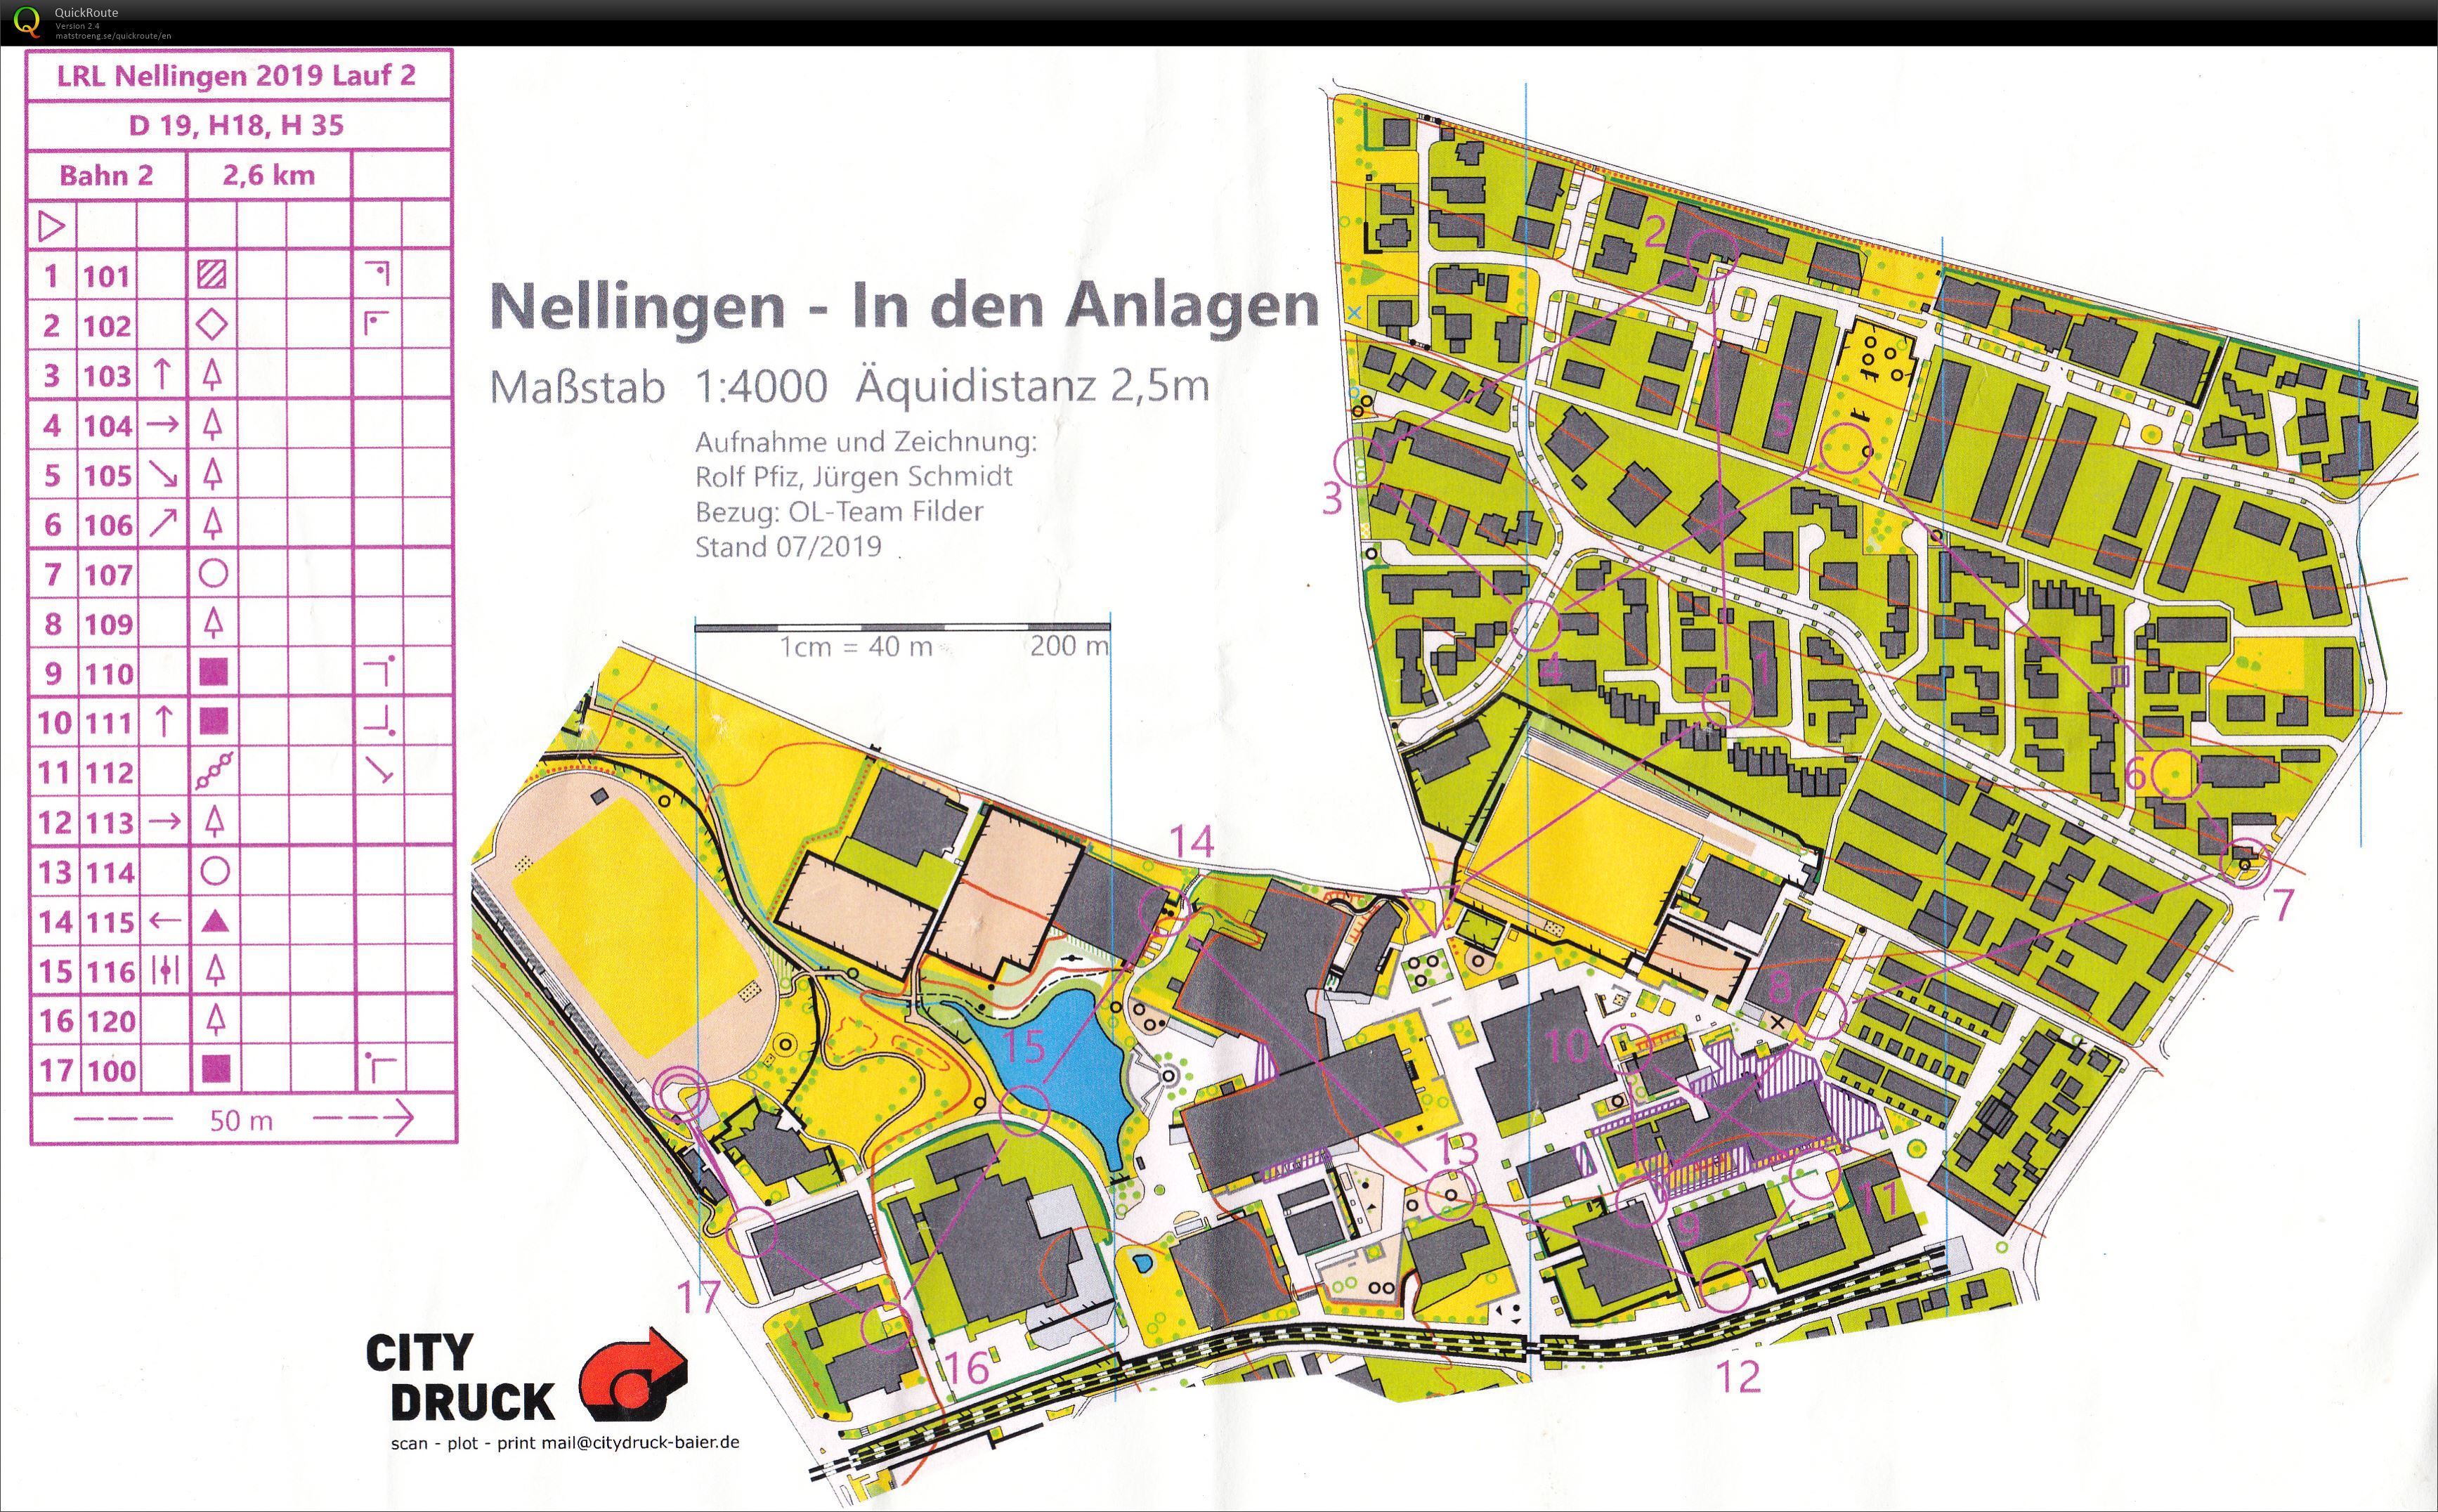 LRL Nellingen - 2 (2019-07-20)